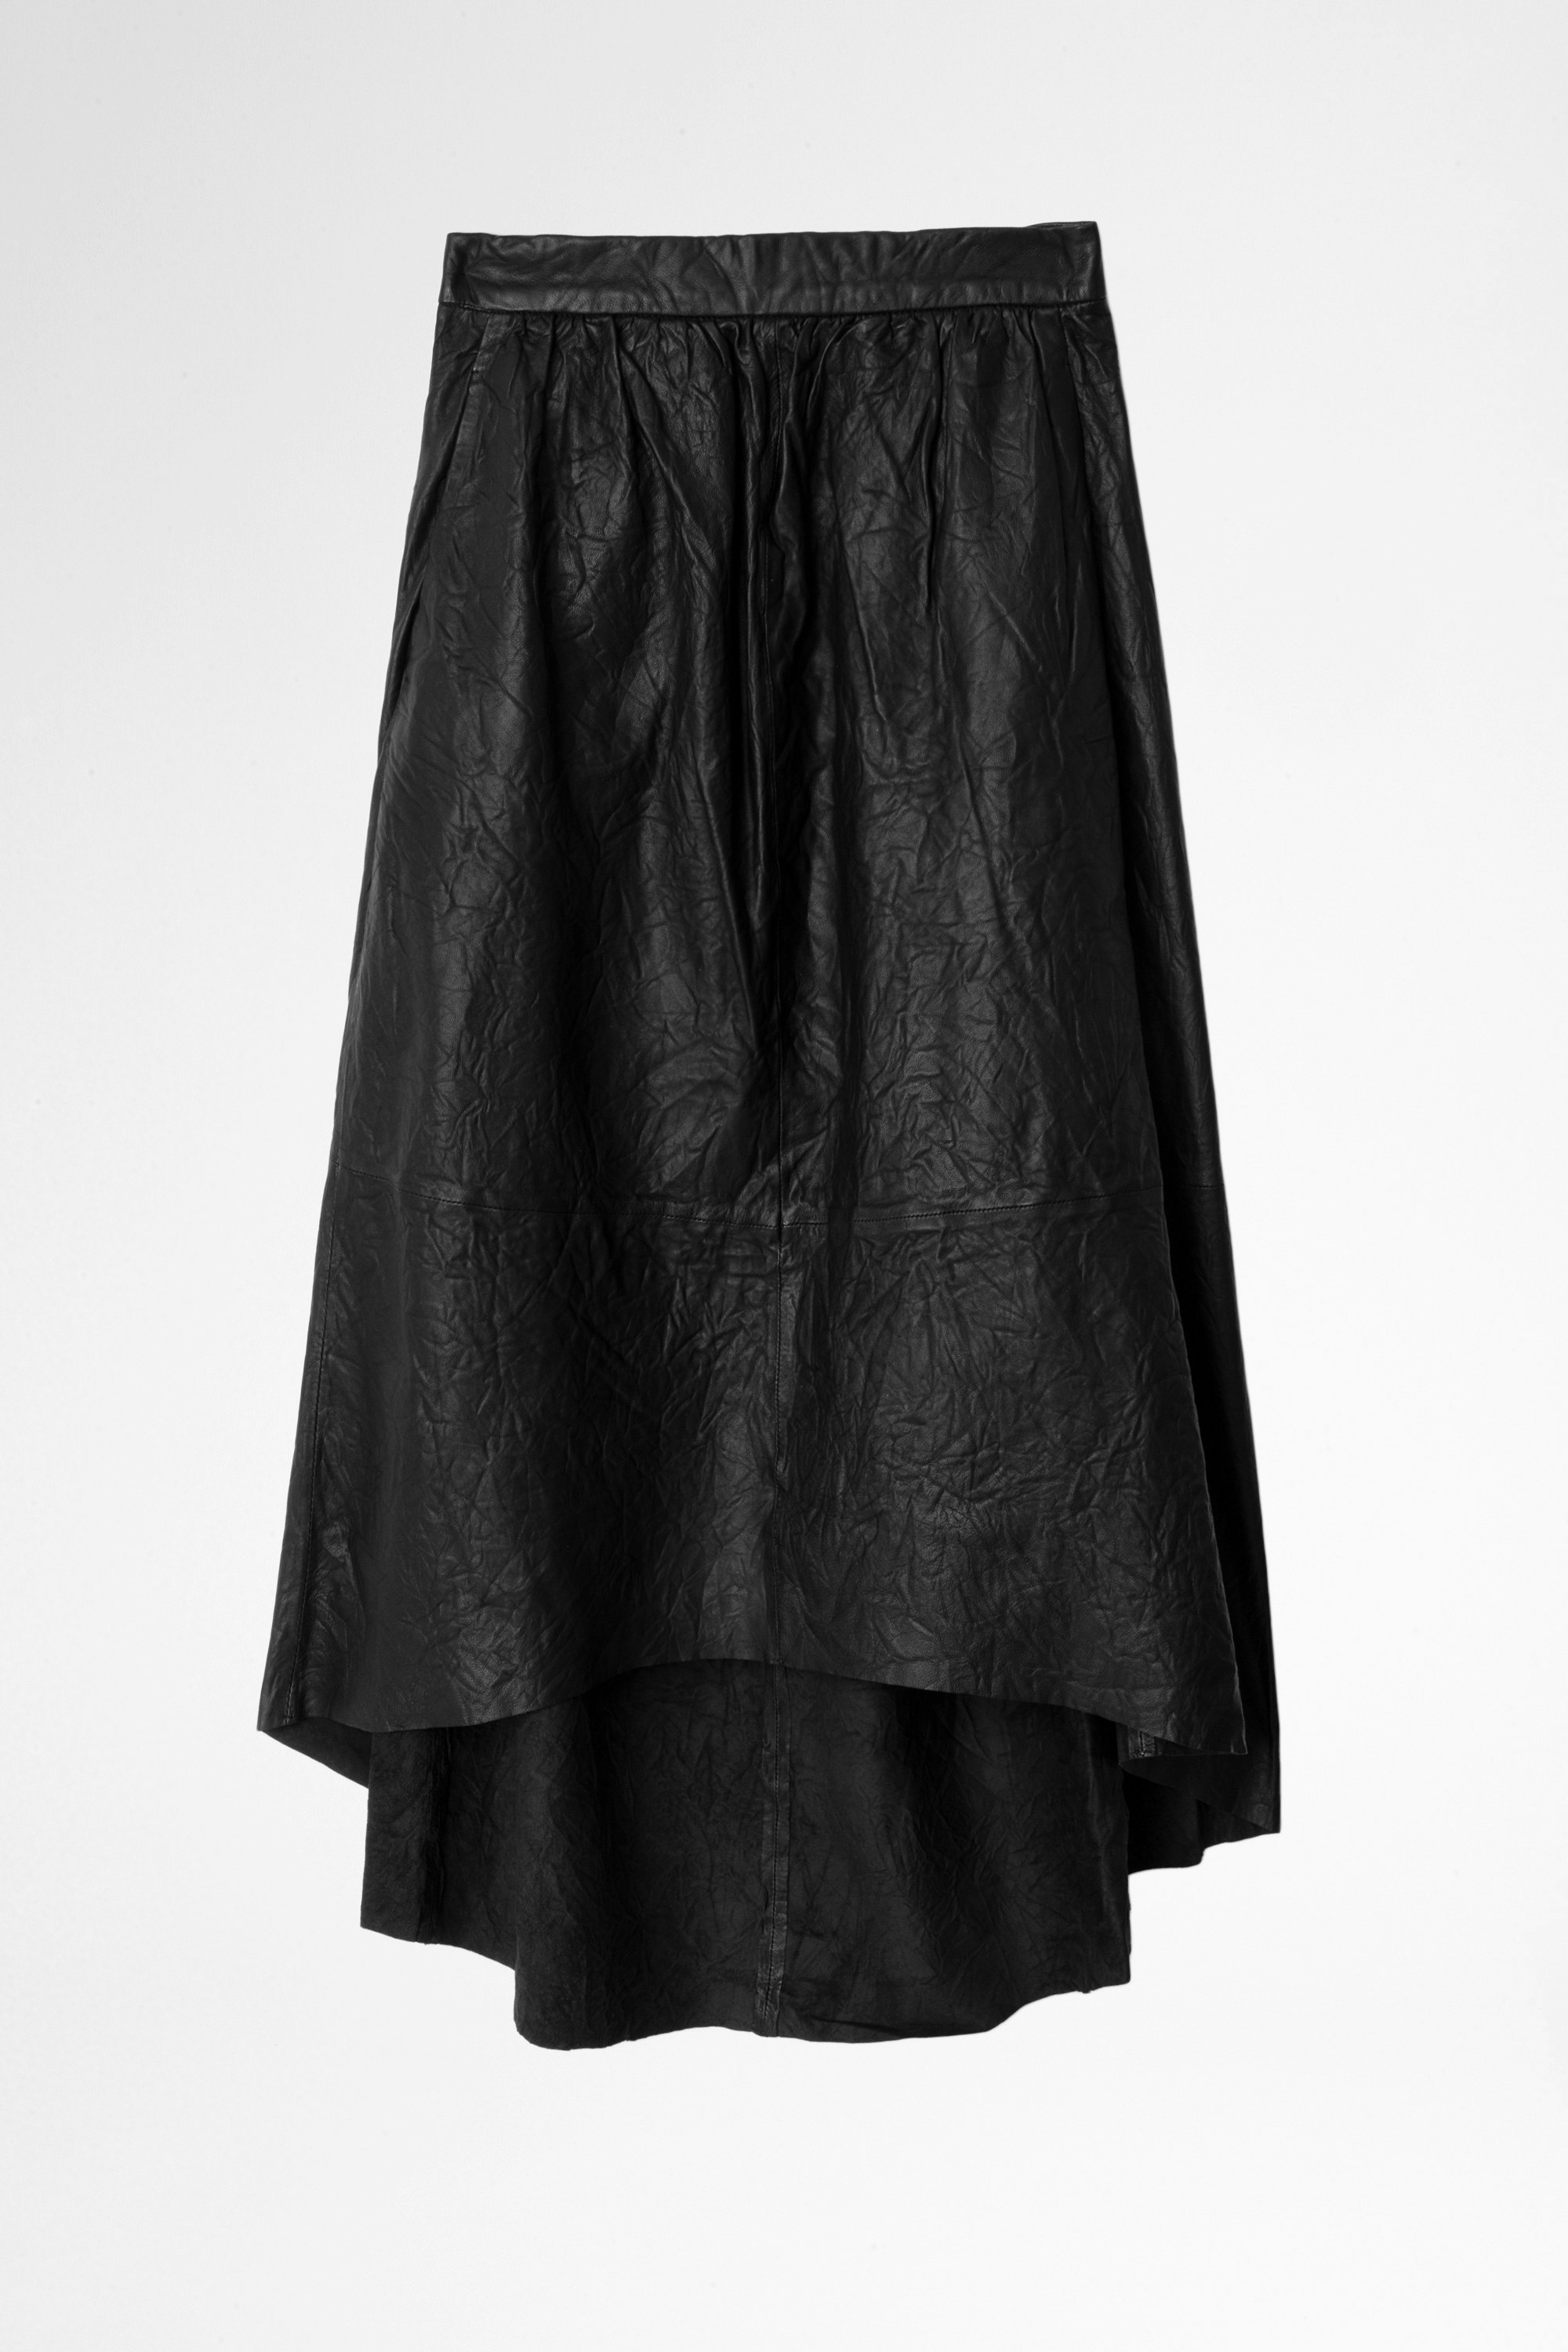 Joslin Crinkle Leather Skirt Long leather skirt.